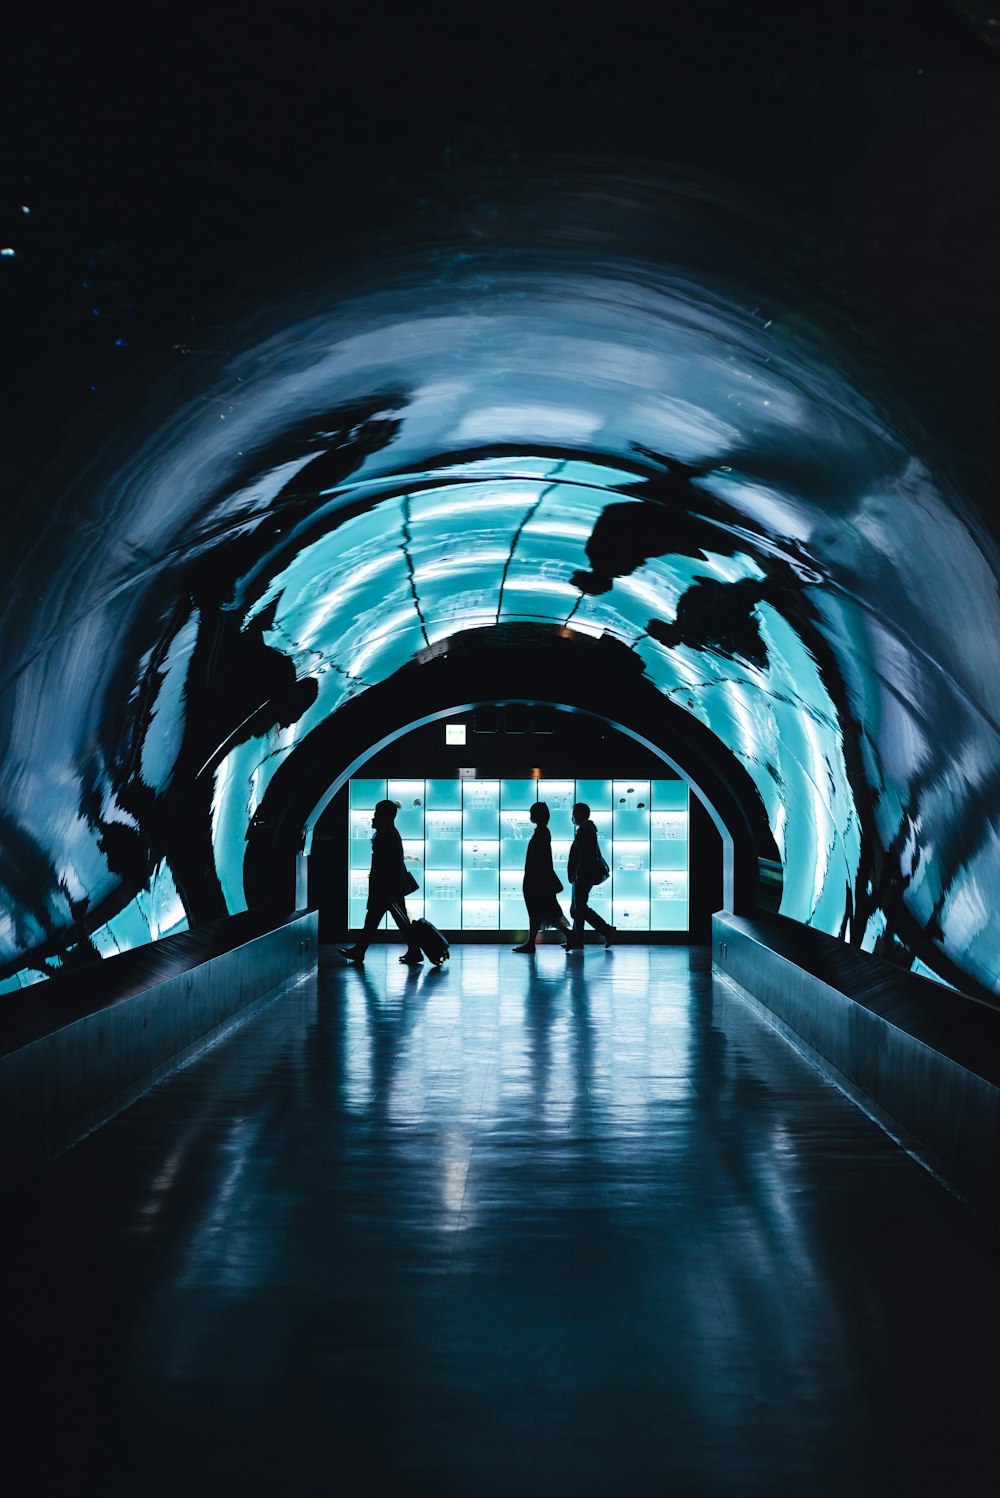 Silhouette von drei Personen, die in der Nähe des Tunnels spazieren gehen